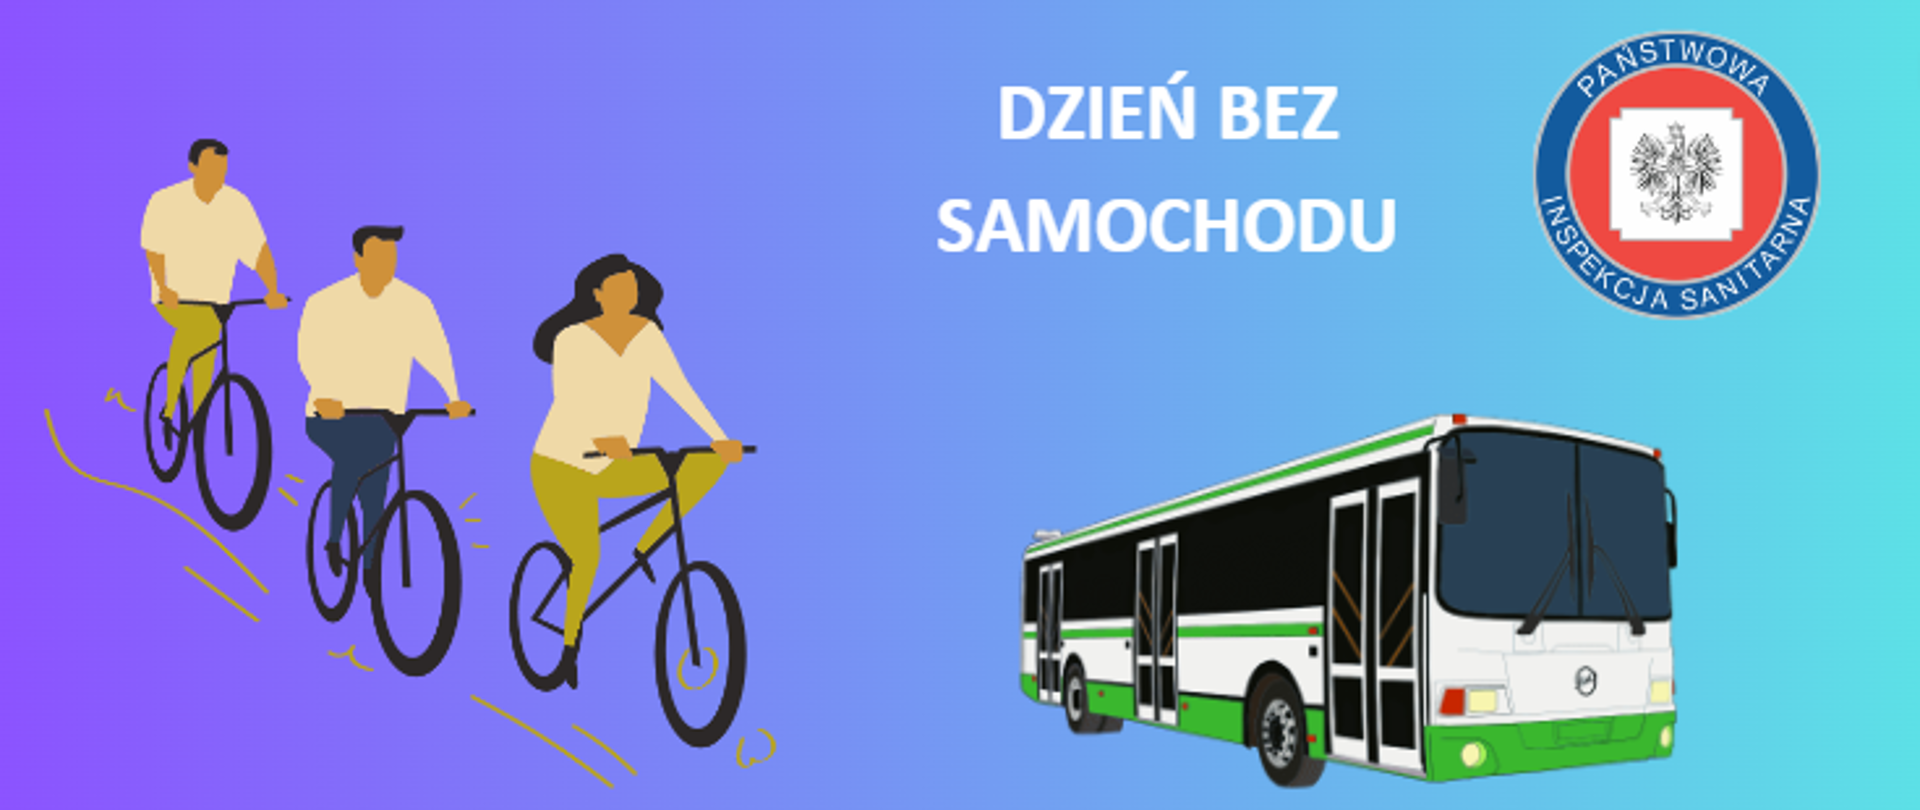 grafika przedstawia autobus, rowerzystów, hasło przewodnie - dzień bez samochodu oraz logo inspekcji sanitarnej